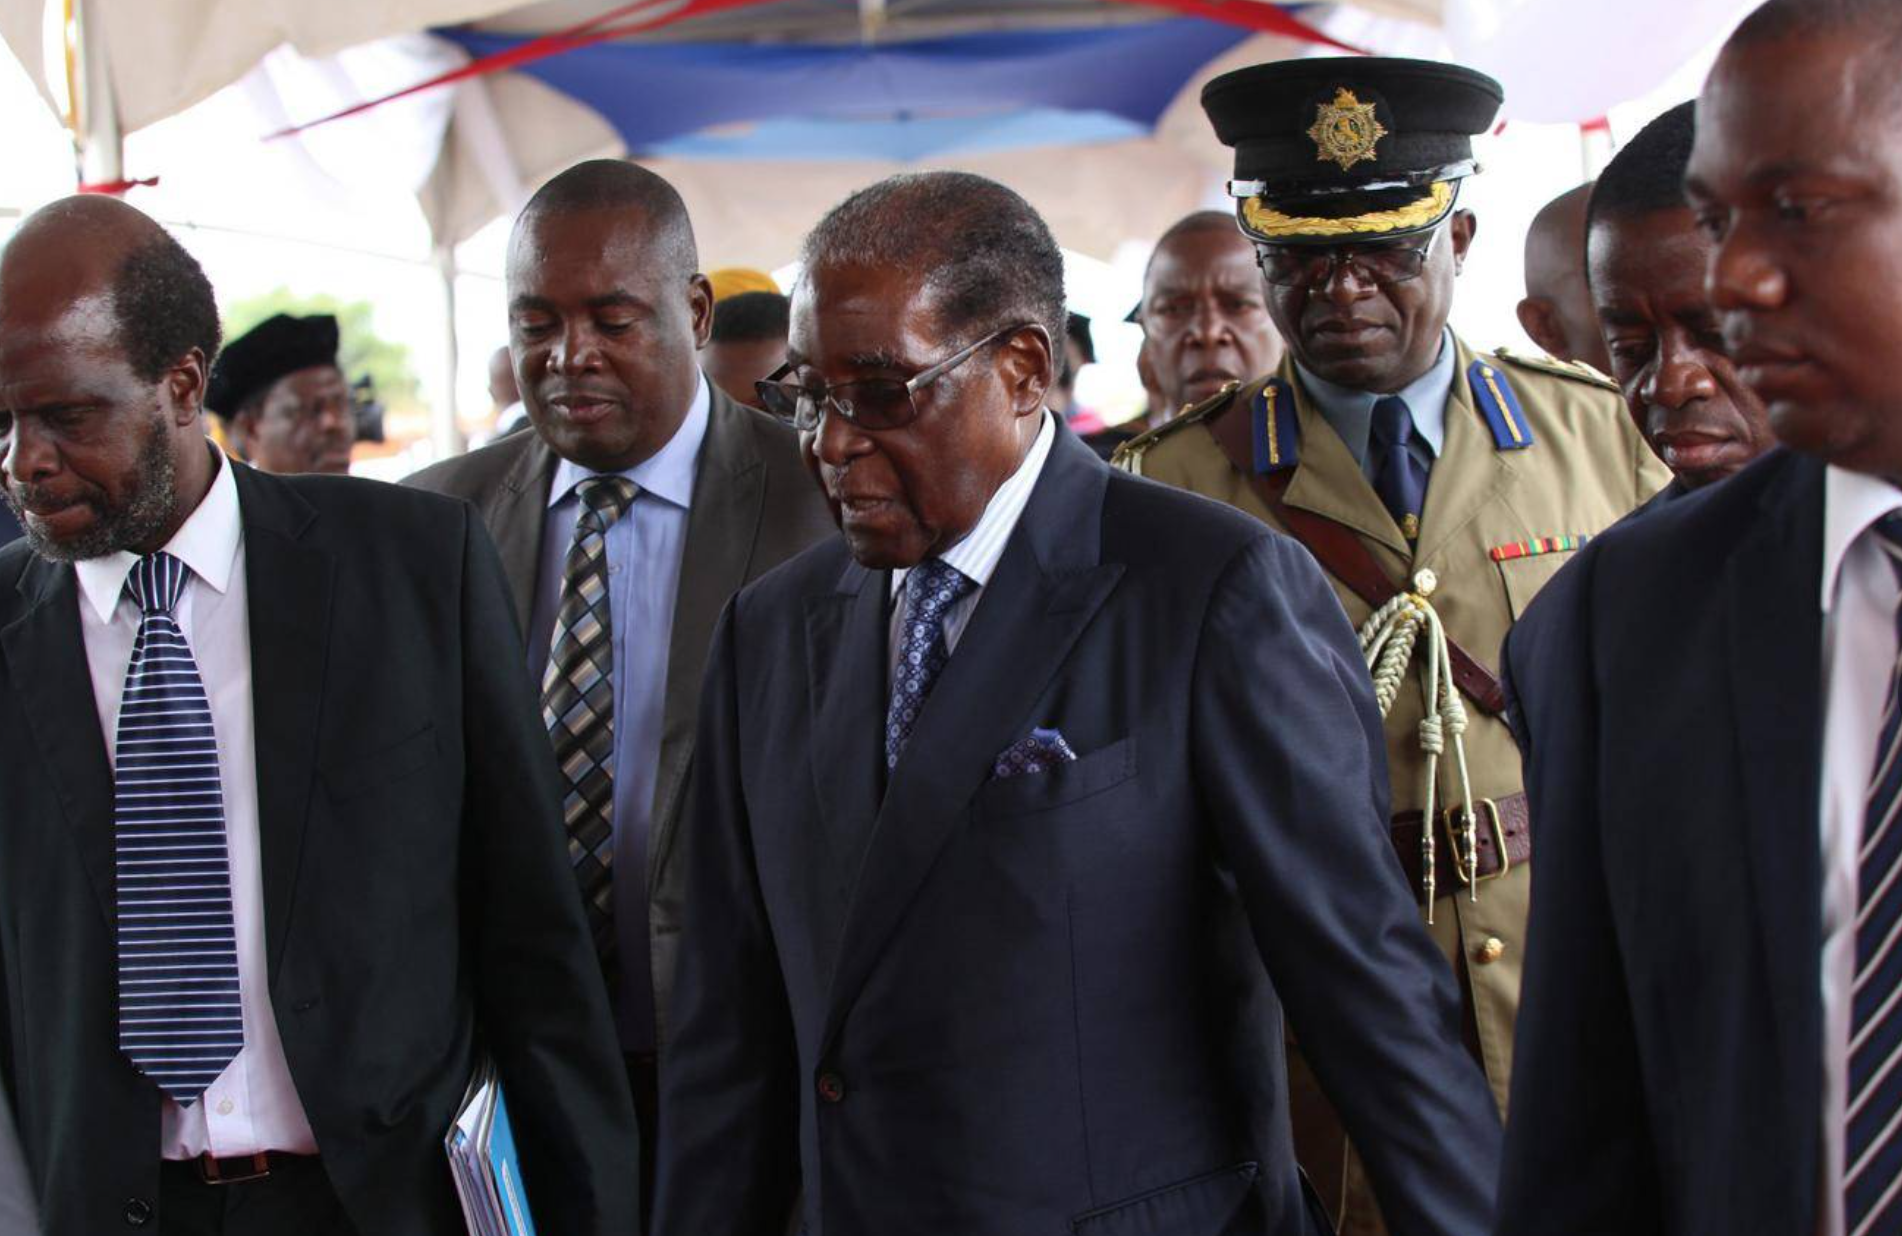 BREAKING: President Mugabe Not Resigning